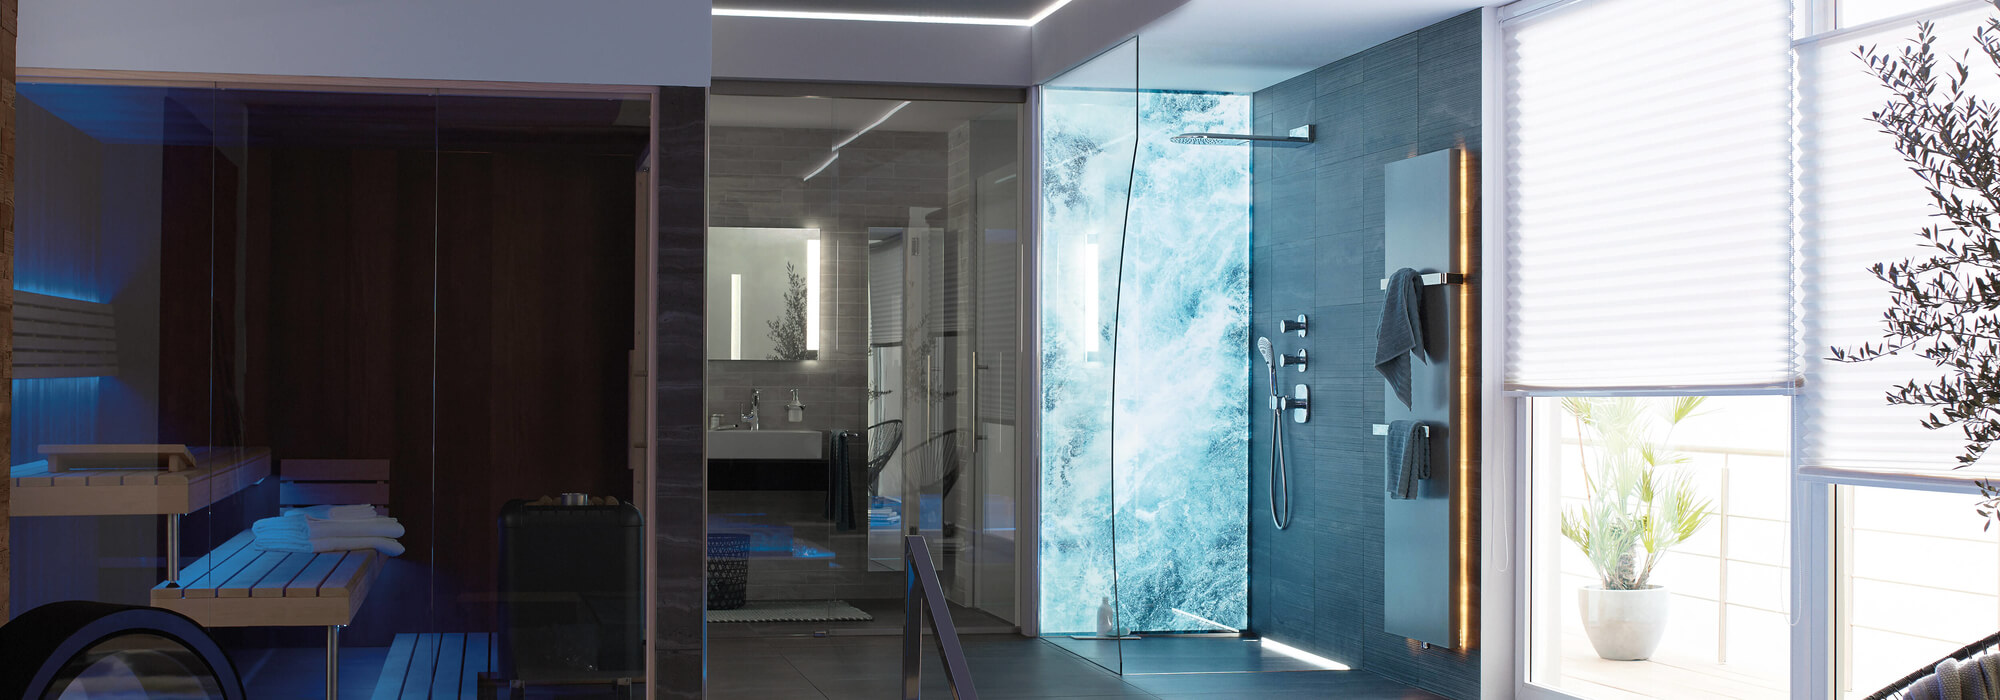 Walk-In Glasduschen sind begehbare und barrierefreie Duschen und perfekt für alle Generationen geeignet